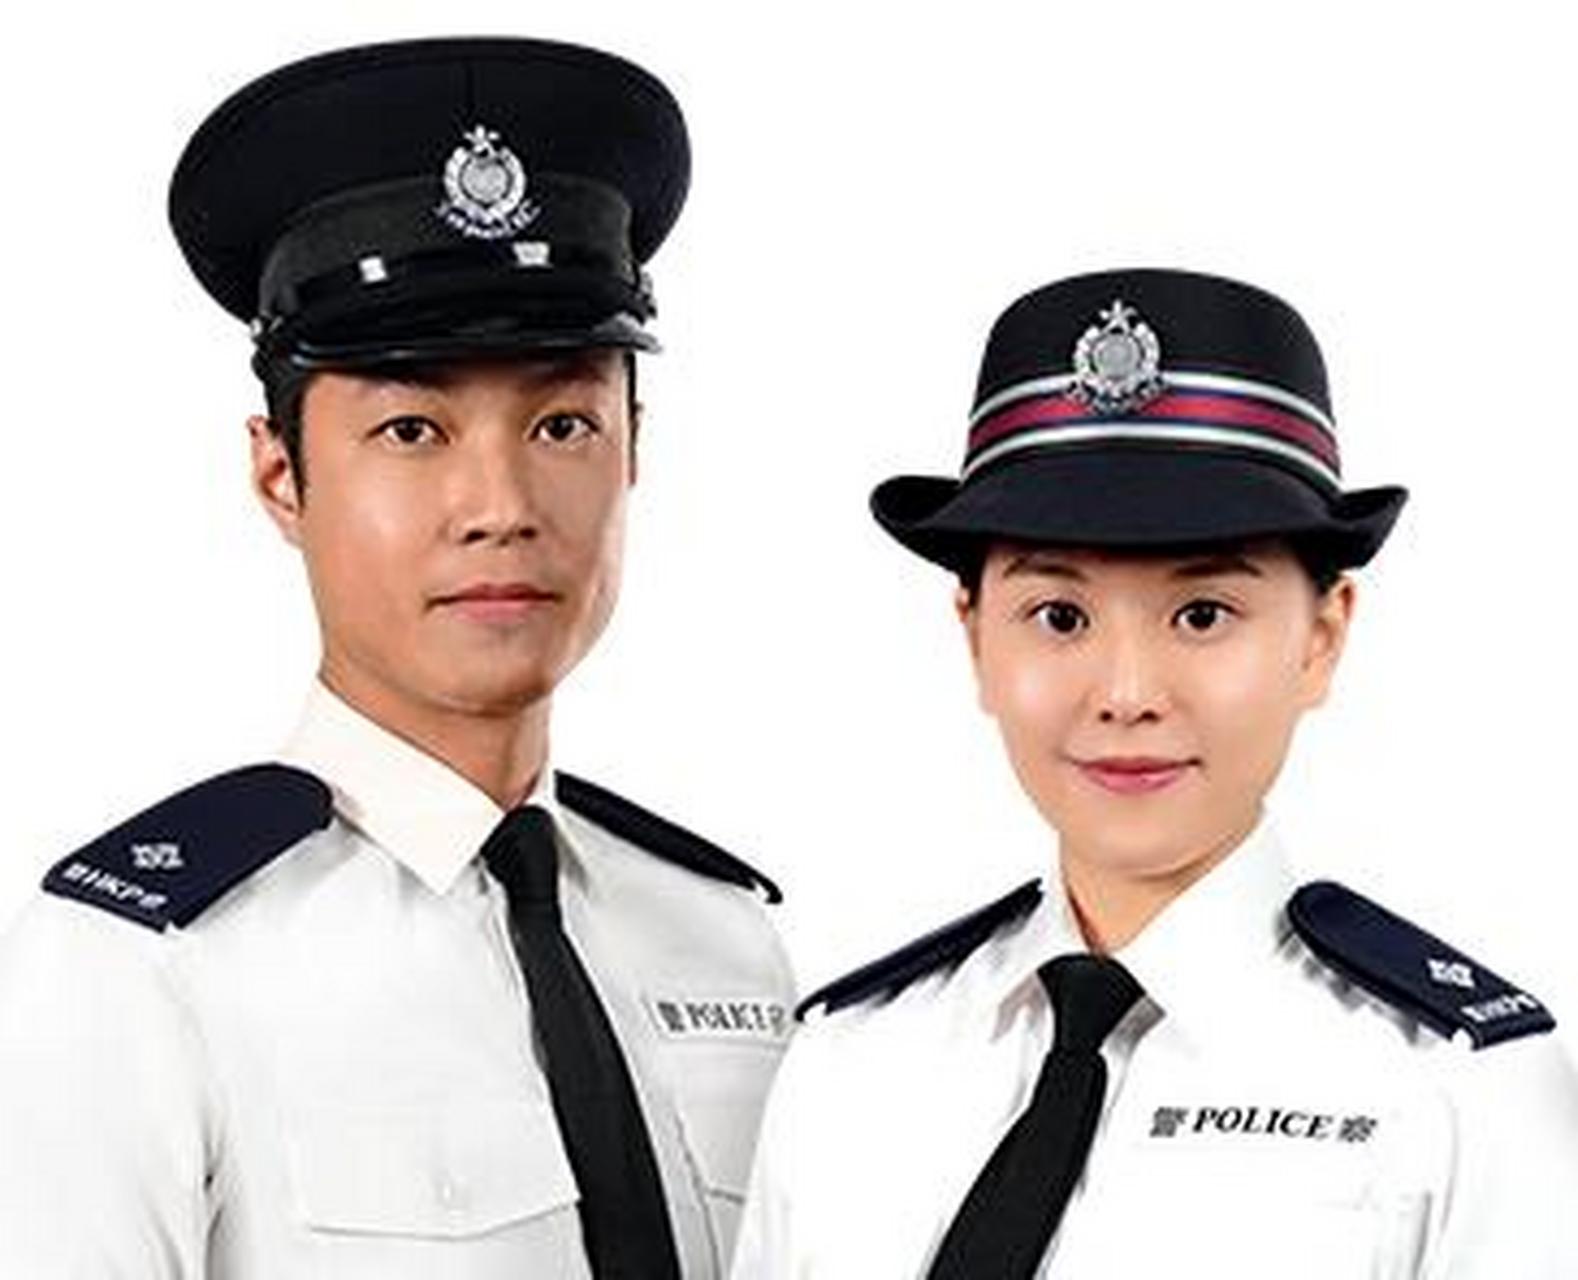 香港辅警制服图片